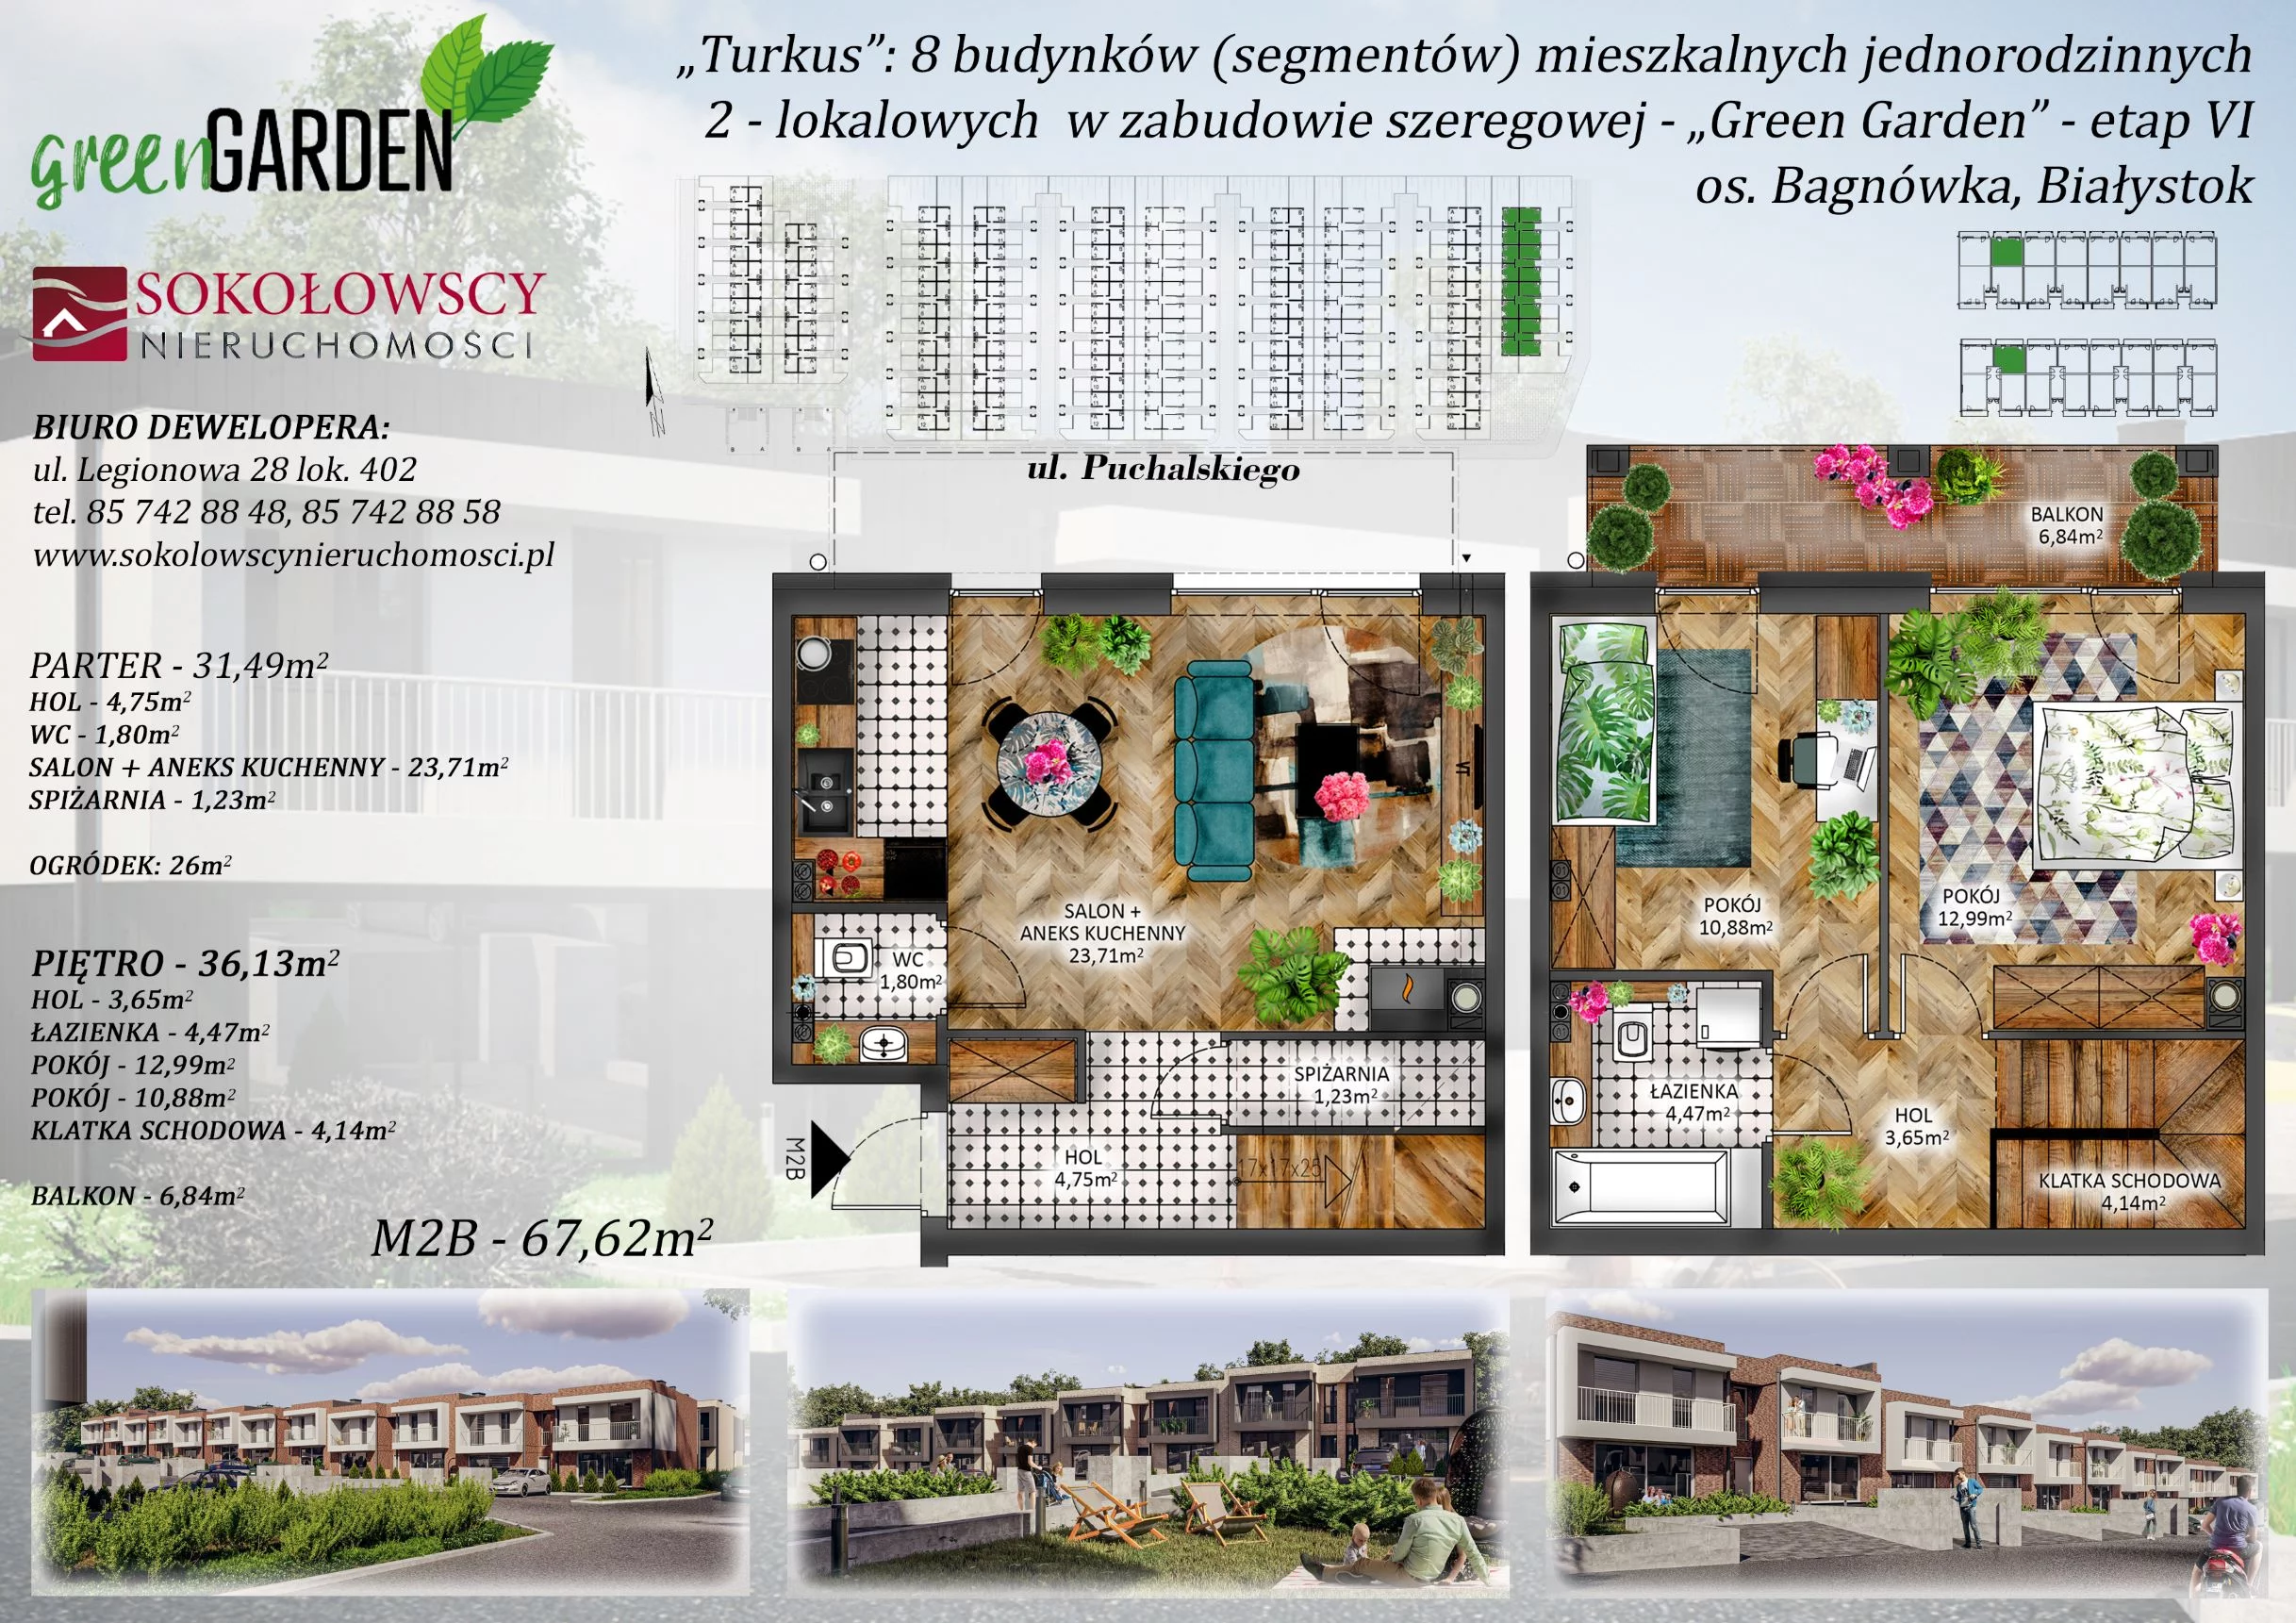 Mieszkanie 67,62 m², parter, oferta nr 2B, Green Garden etap 6, Białystok, Bagnówka, ul. Karola Puchalskiego